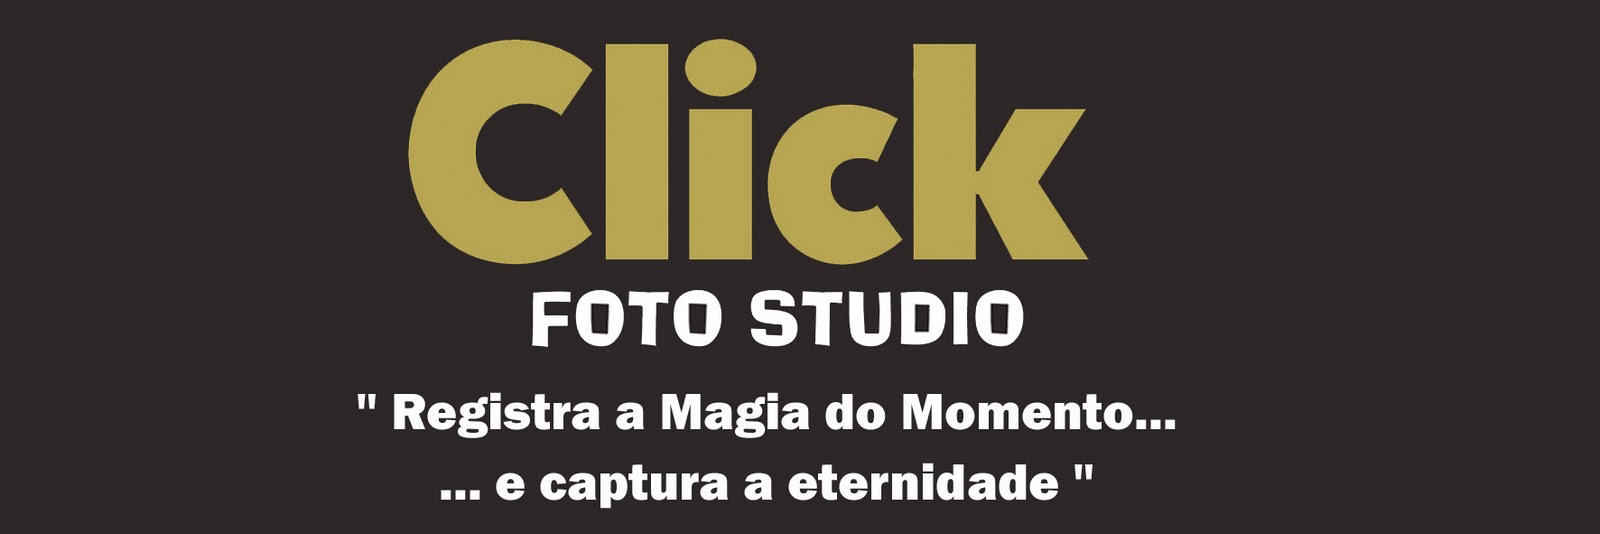 CLICK foto studio